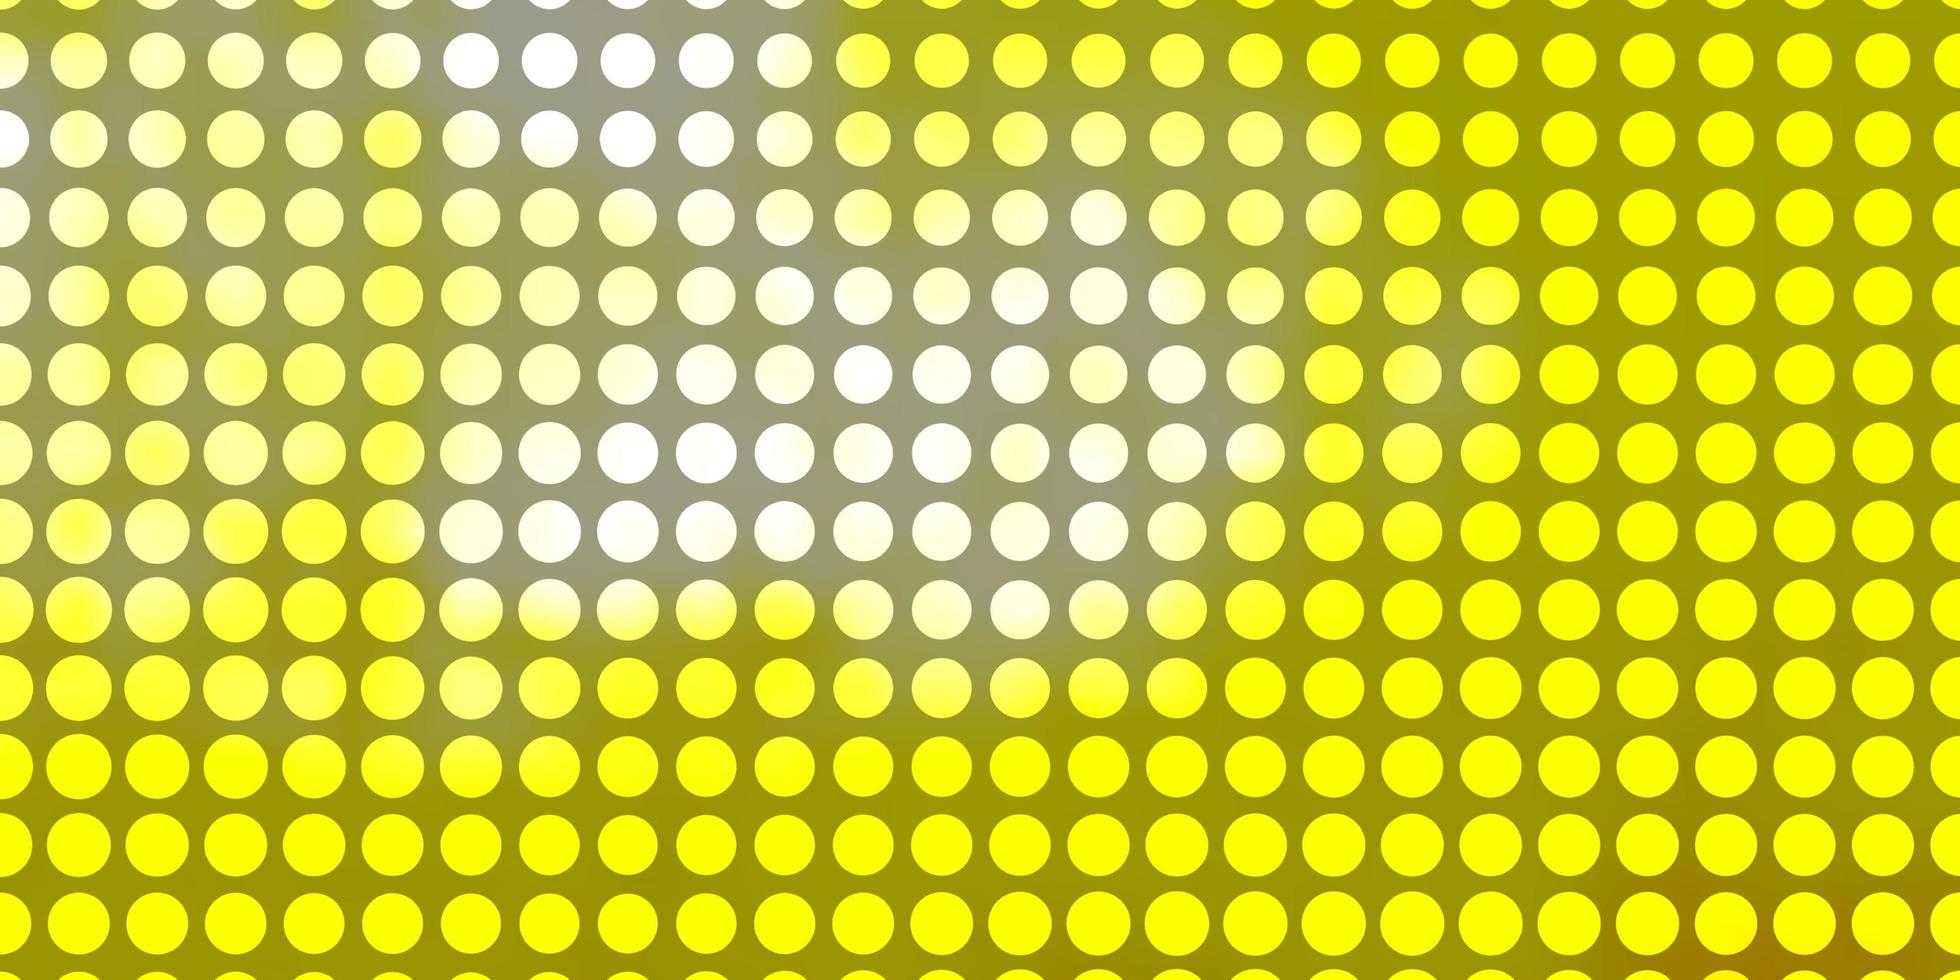 patrón de vector amarillo claro con círculos. Ilustración con un conjunto de esferas abstractas de colores brillantes. diseño para sus comerciales.